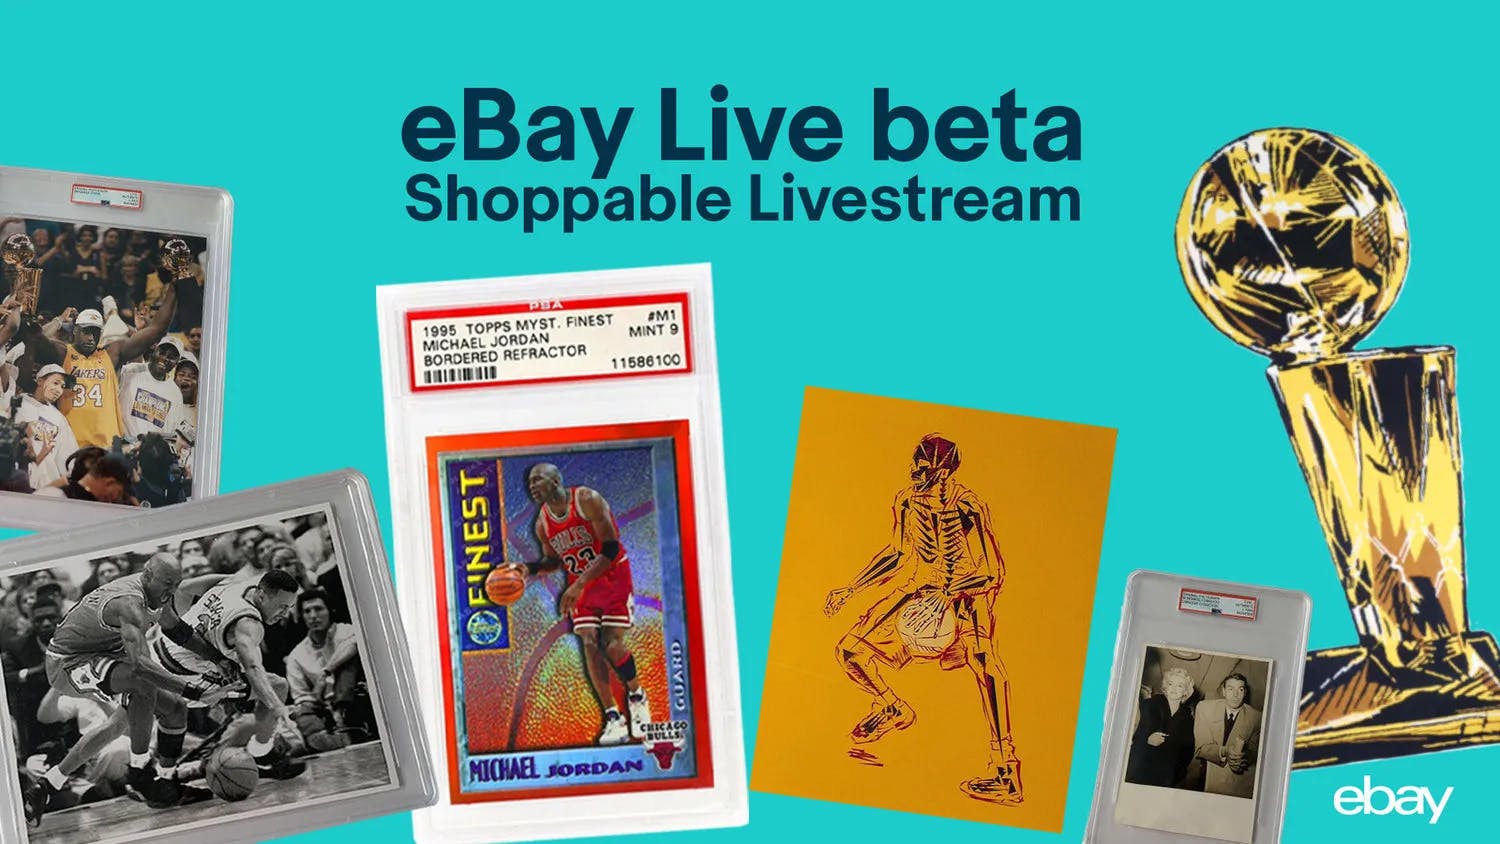 Ebay Live media 1